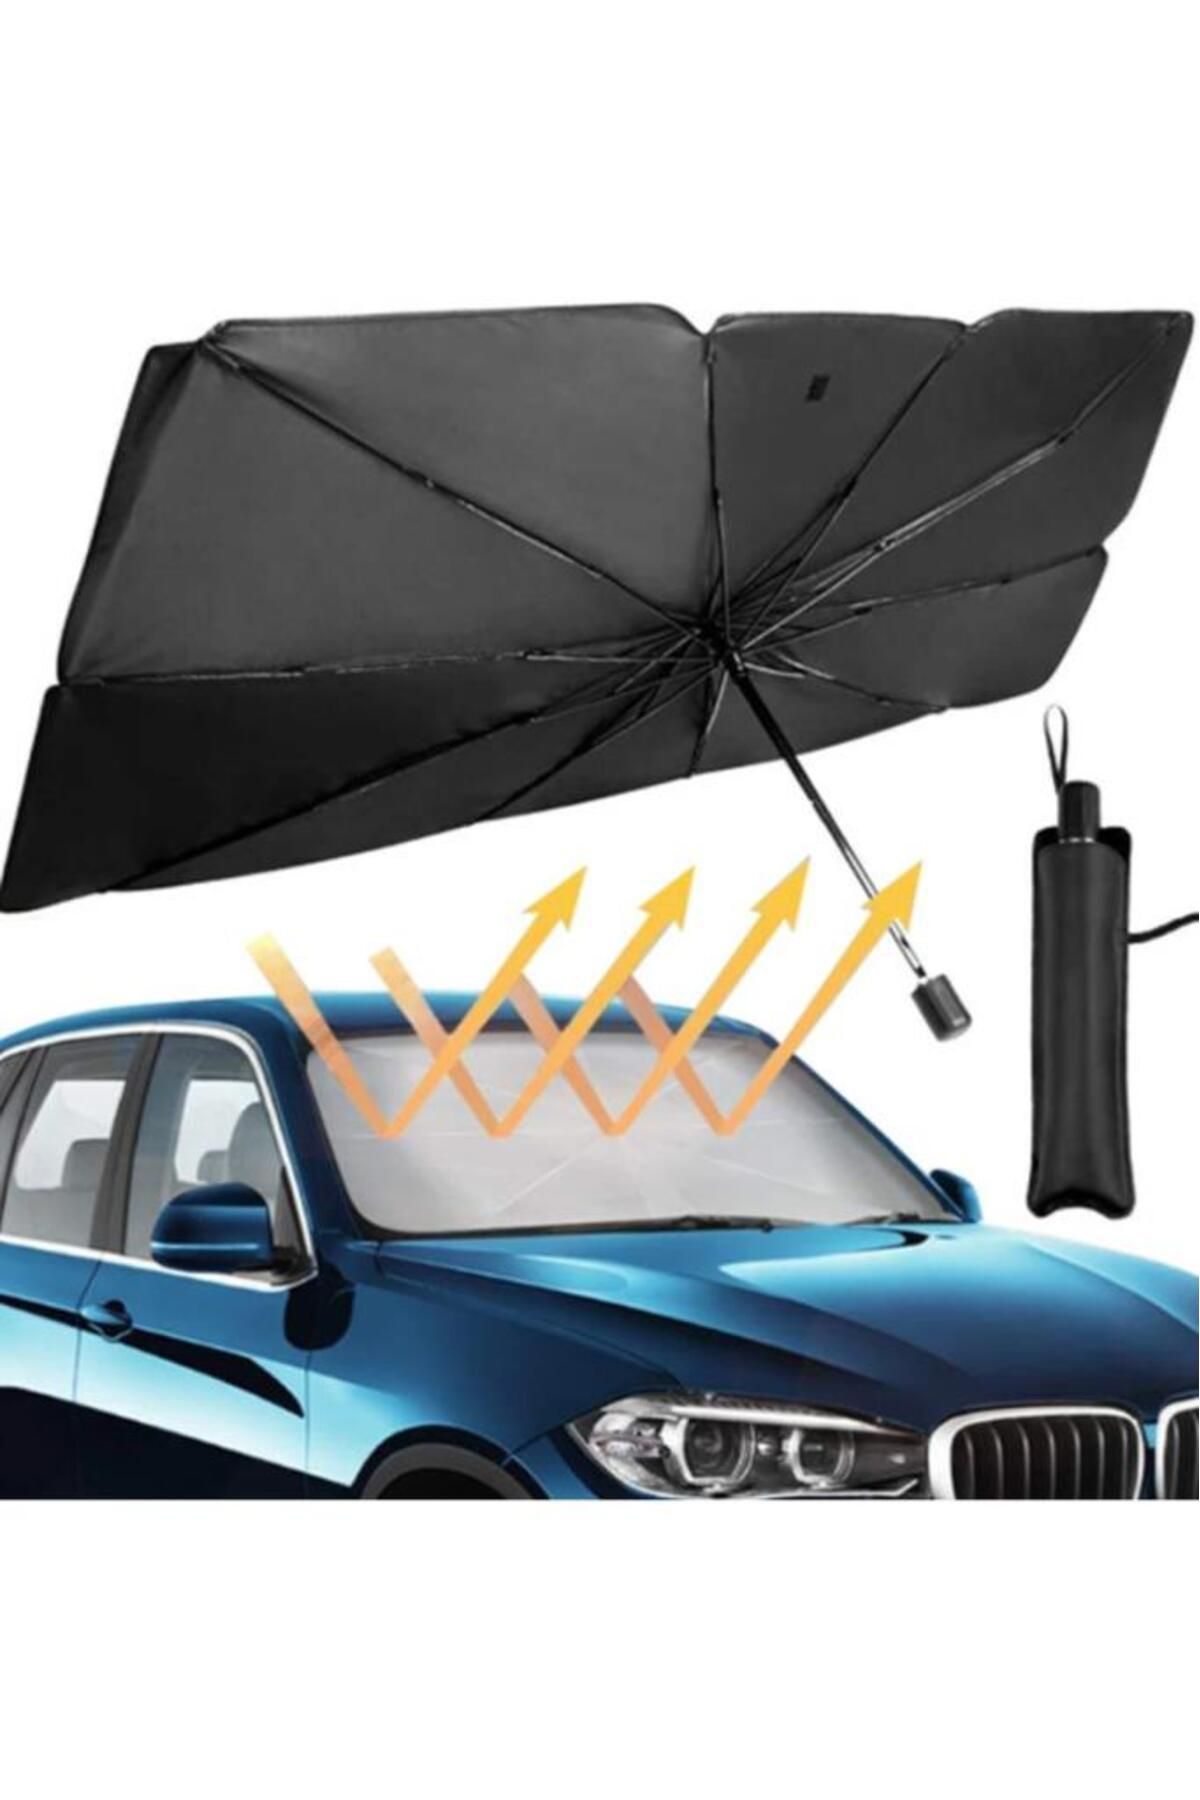 Ally Mobile Ally Araba Güneş Gölge Koruyucu Şemsiye Oto Ön Cam Güneşlik(145cm*79cm)-siyah,gri